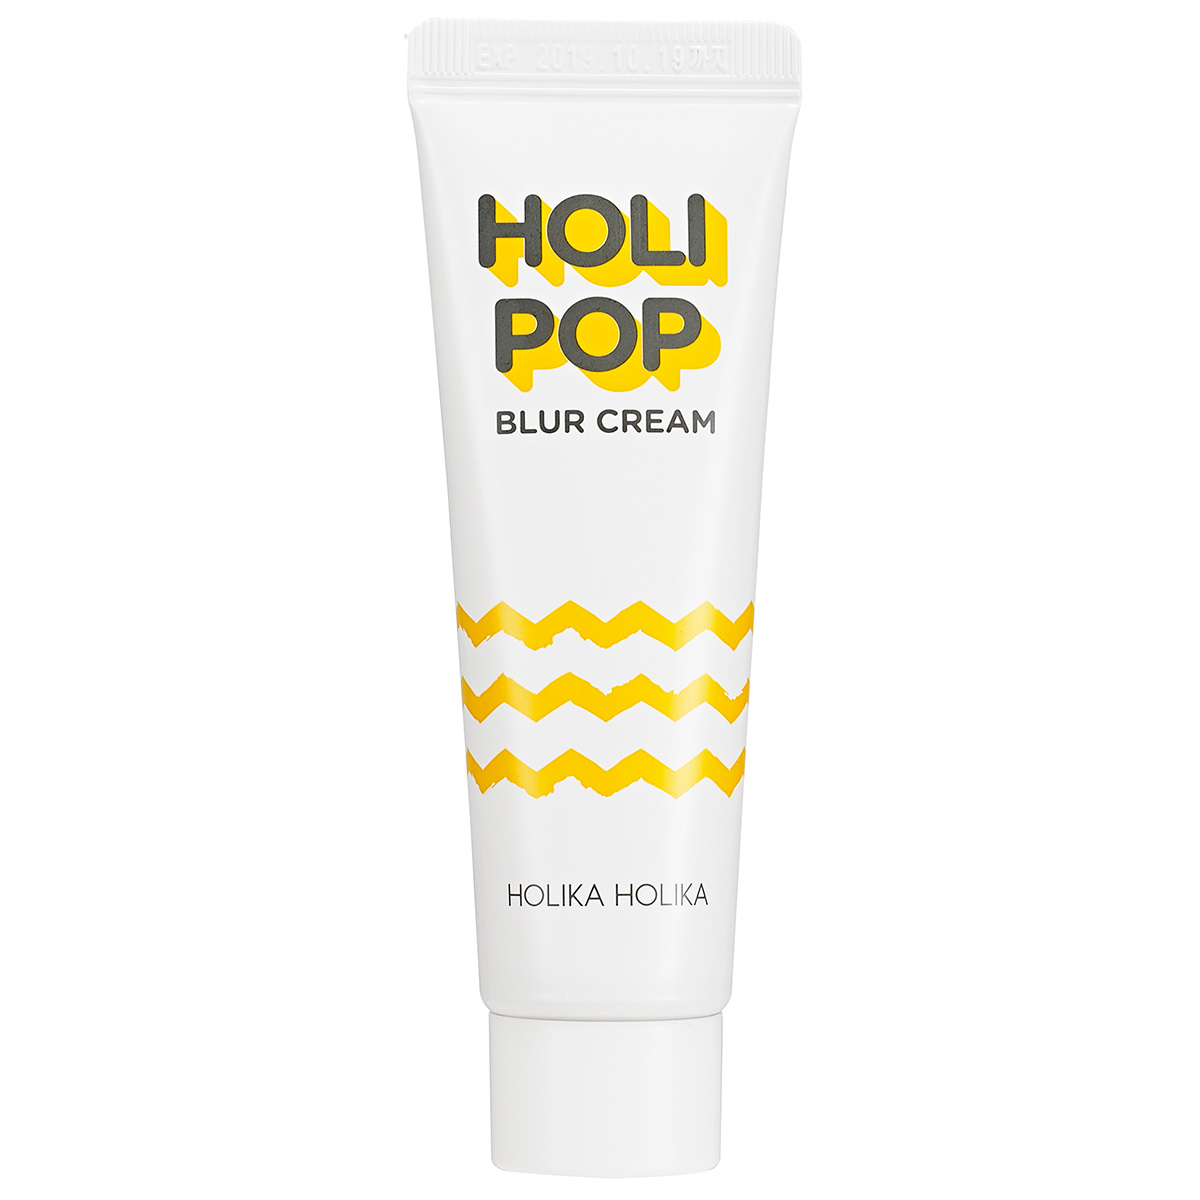 Holi Pop Blur Cream, 30 ml Holika Holika Pohjustusvoide